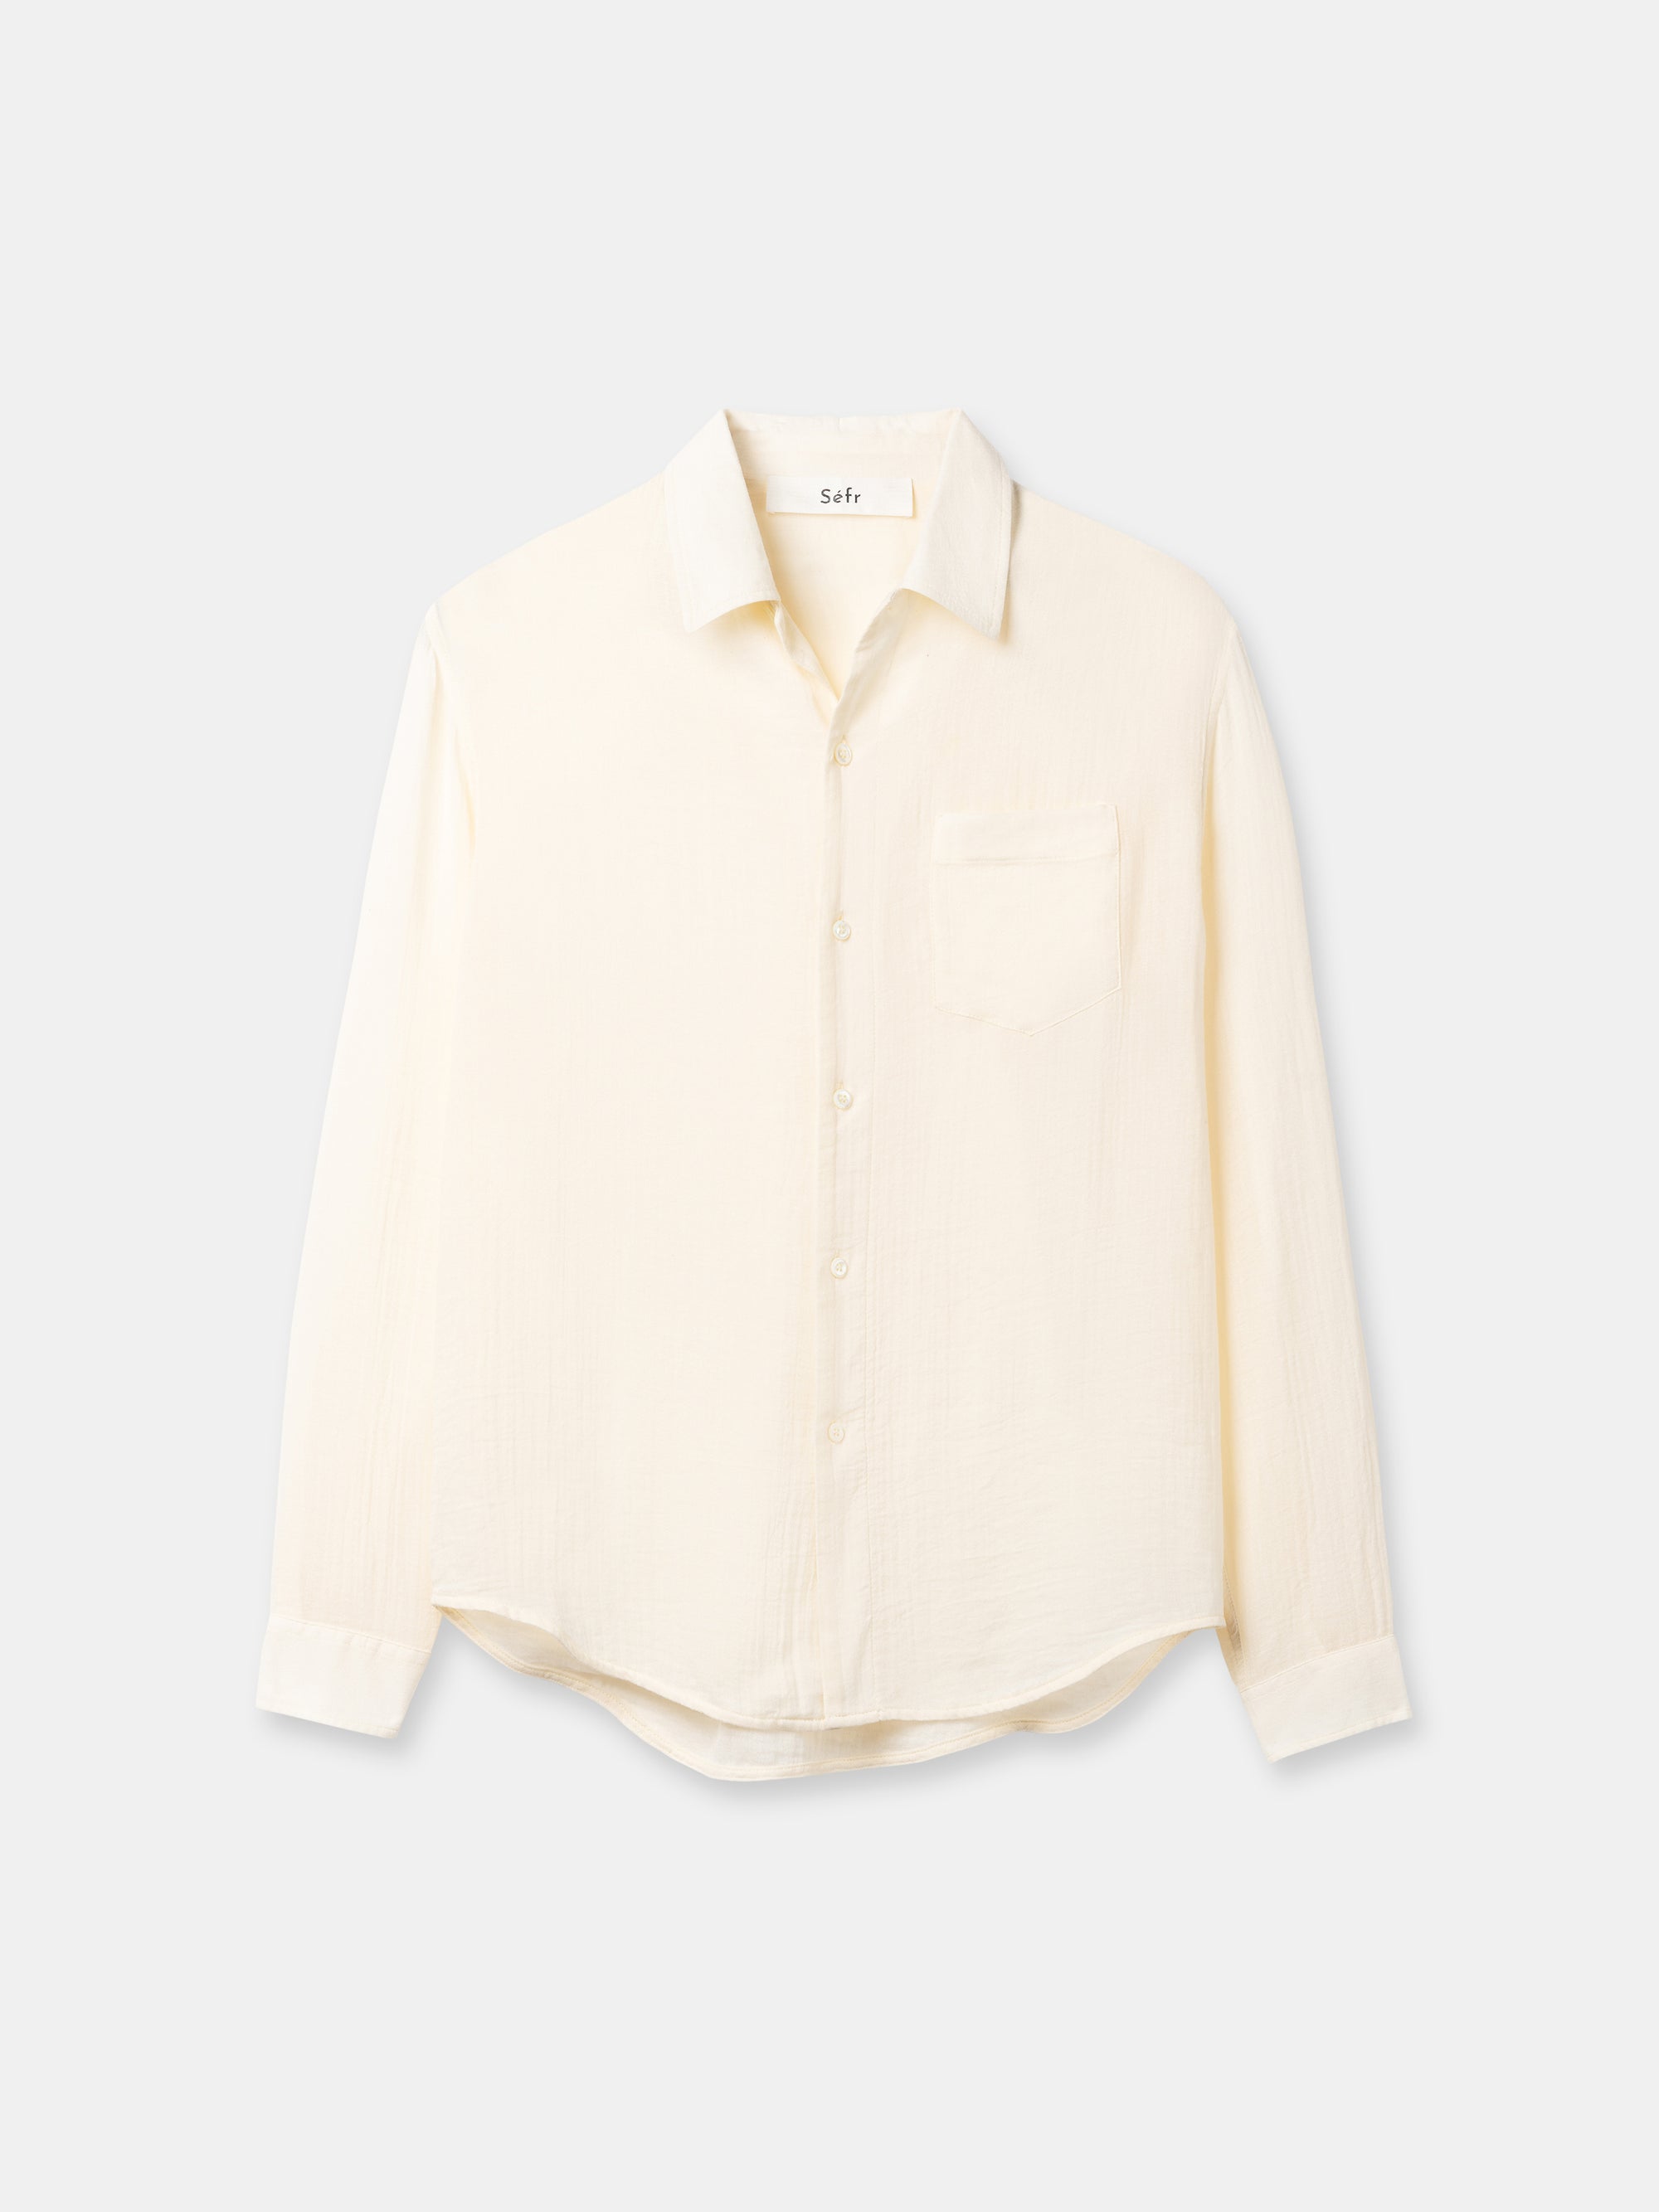 SEFR Leo Shirt | Vanilla white LEO BOUTIQUE